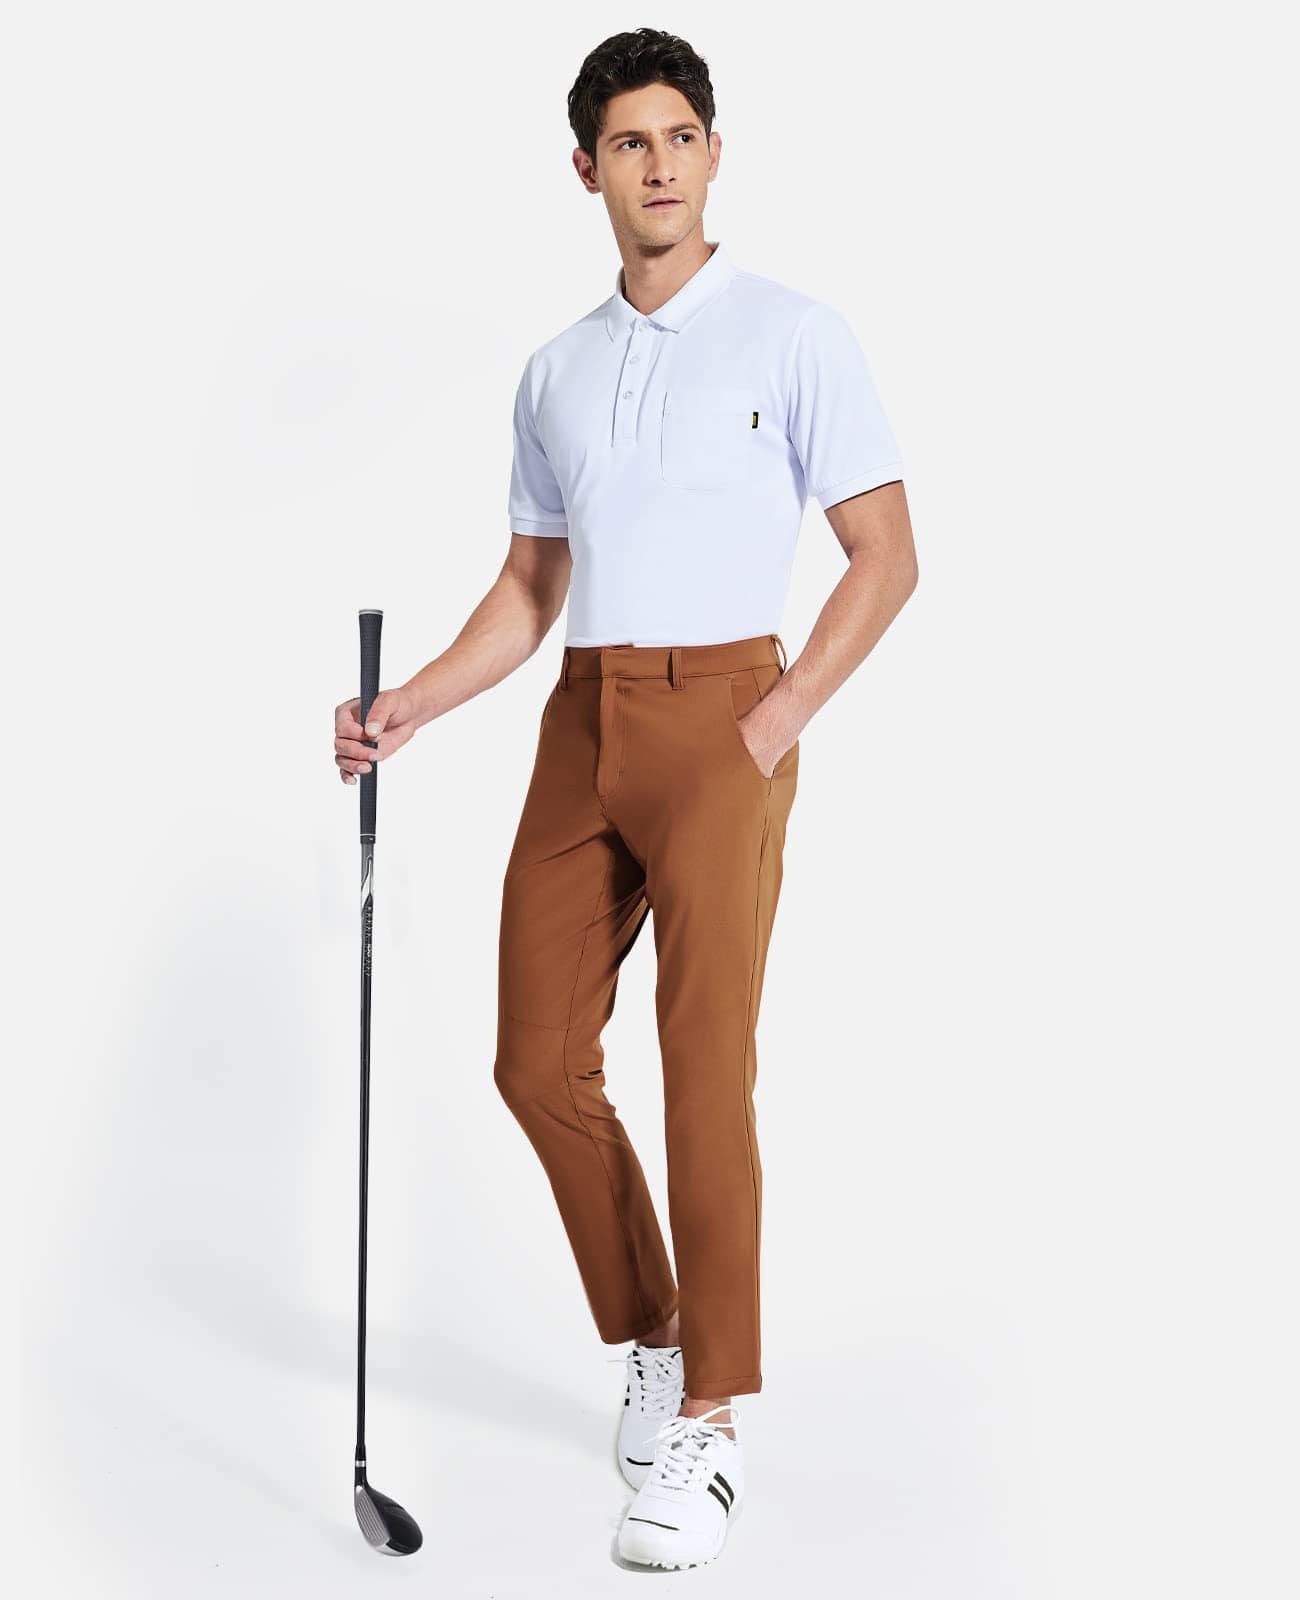 MIER Men's Stretch Golf Pants Slim Fit Quick Dry Pants